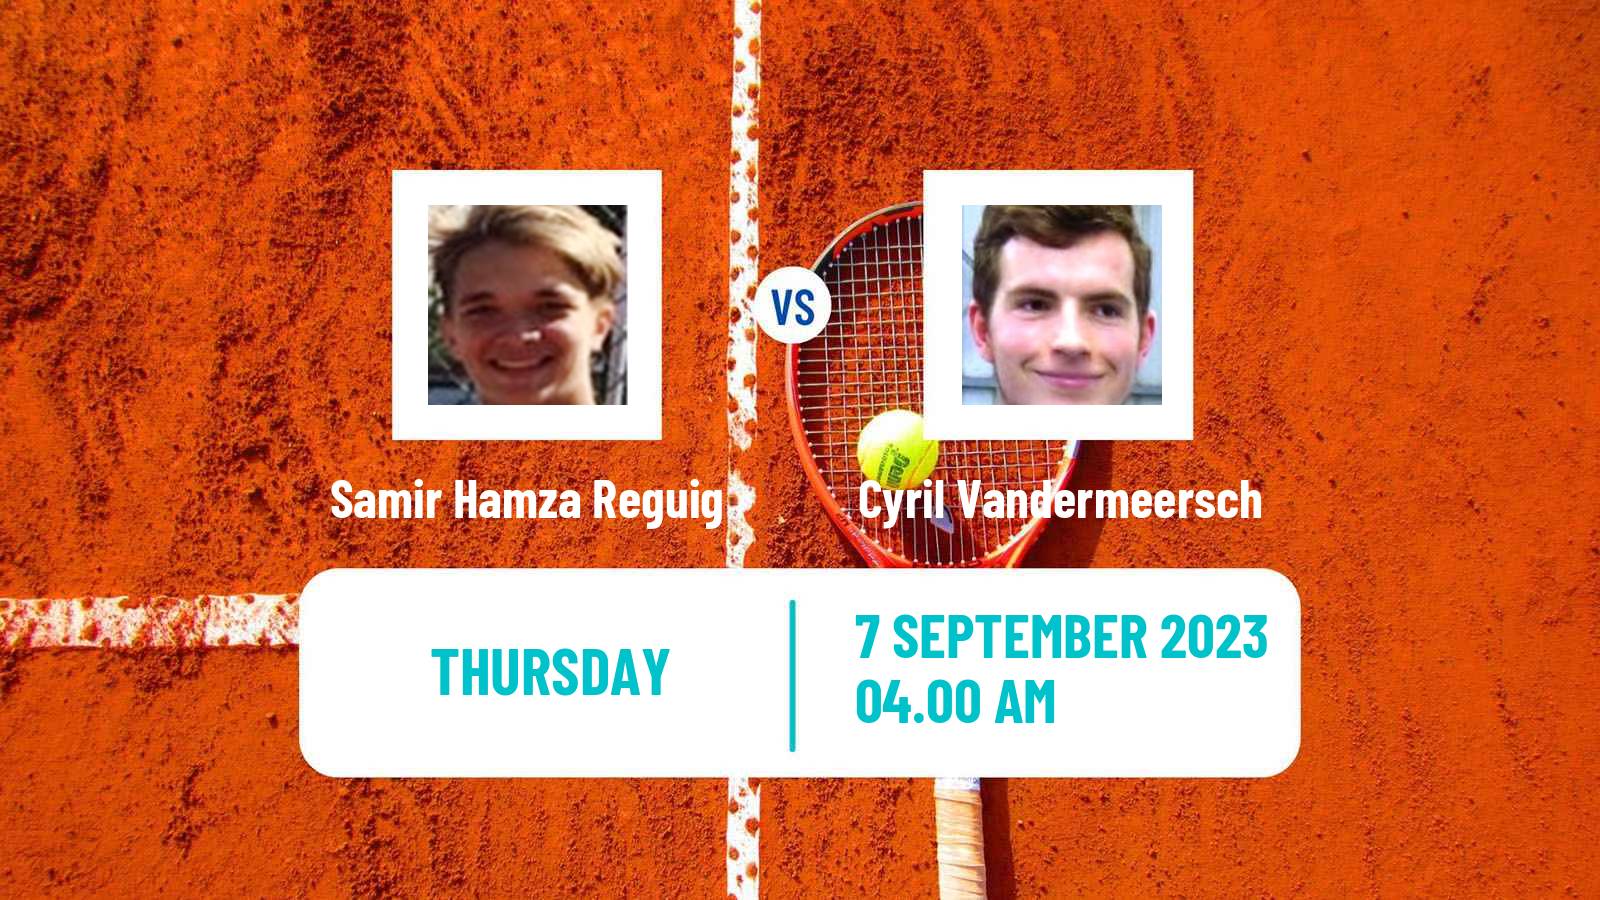 Tennis ITF M15 Monastir 36 Men Samir Hamza Reguig - Cyril Vandermeersch